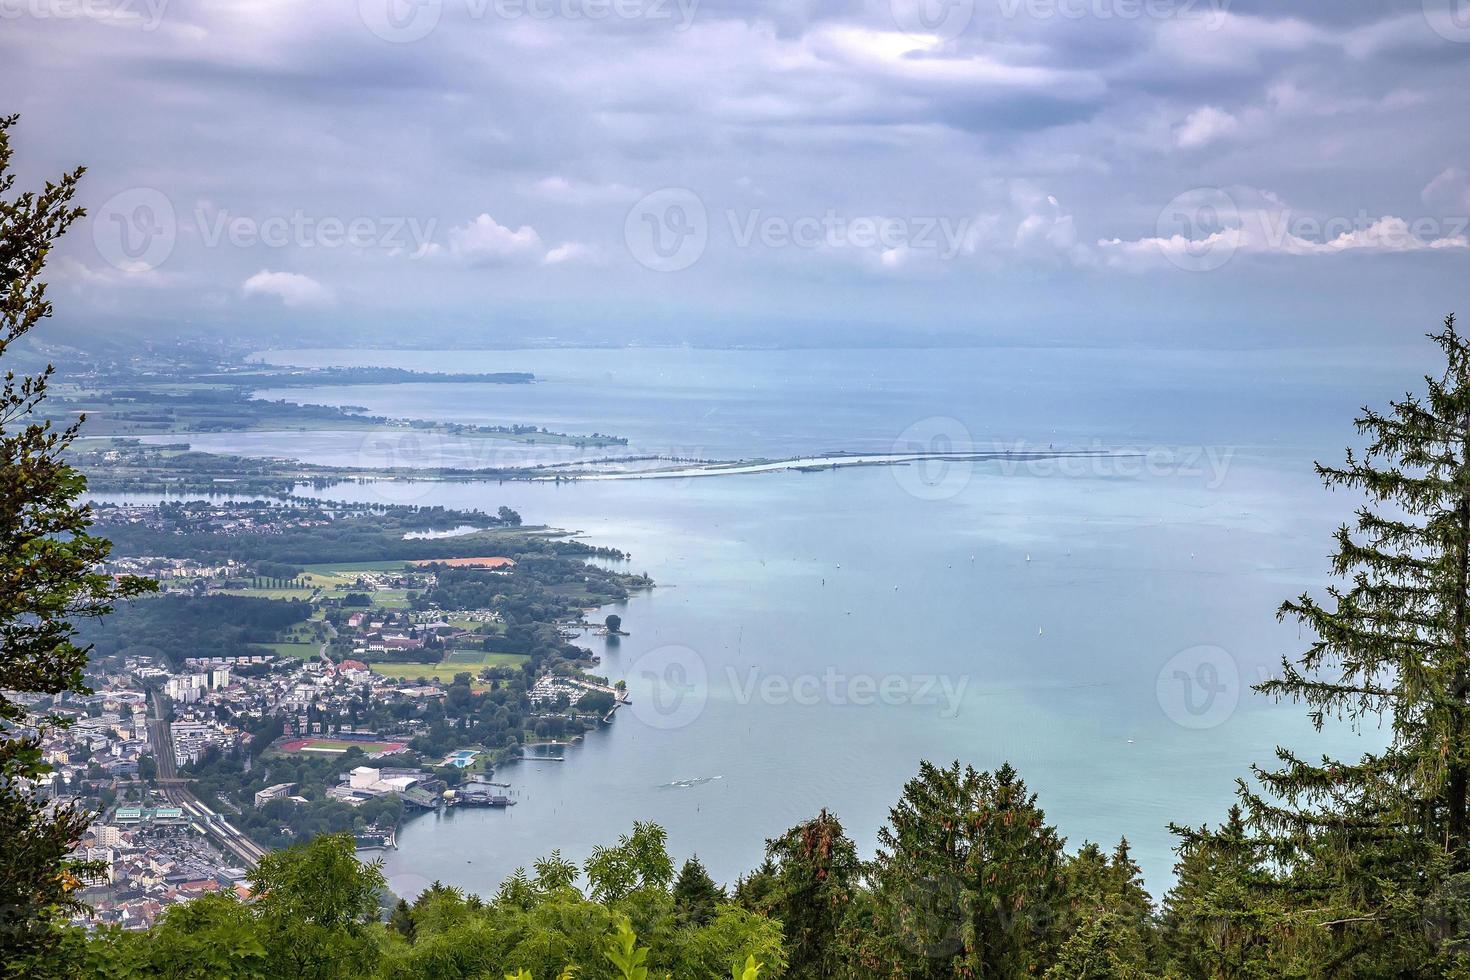 aereo Visualizza a partire dal pfander per bodensee lago Costanza con storico città di lindau e bregenz foto